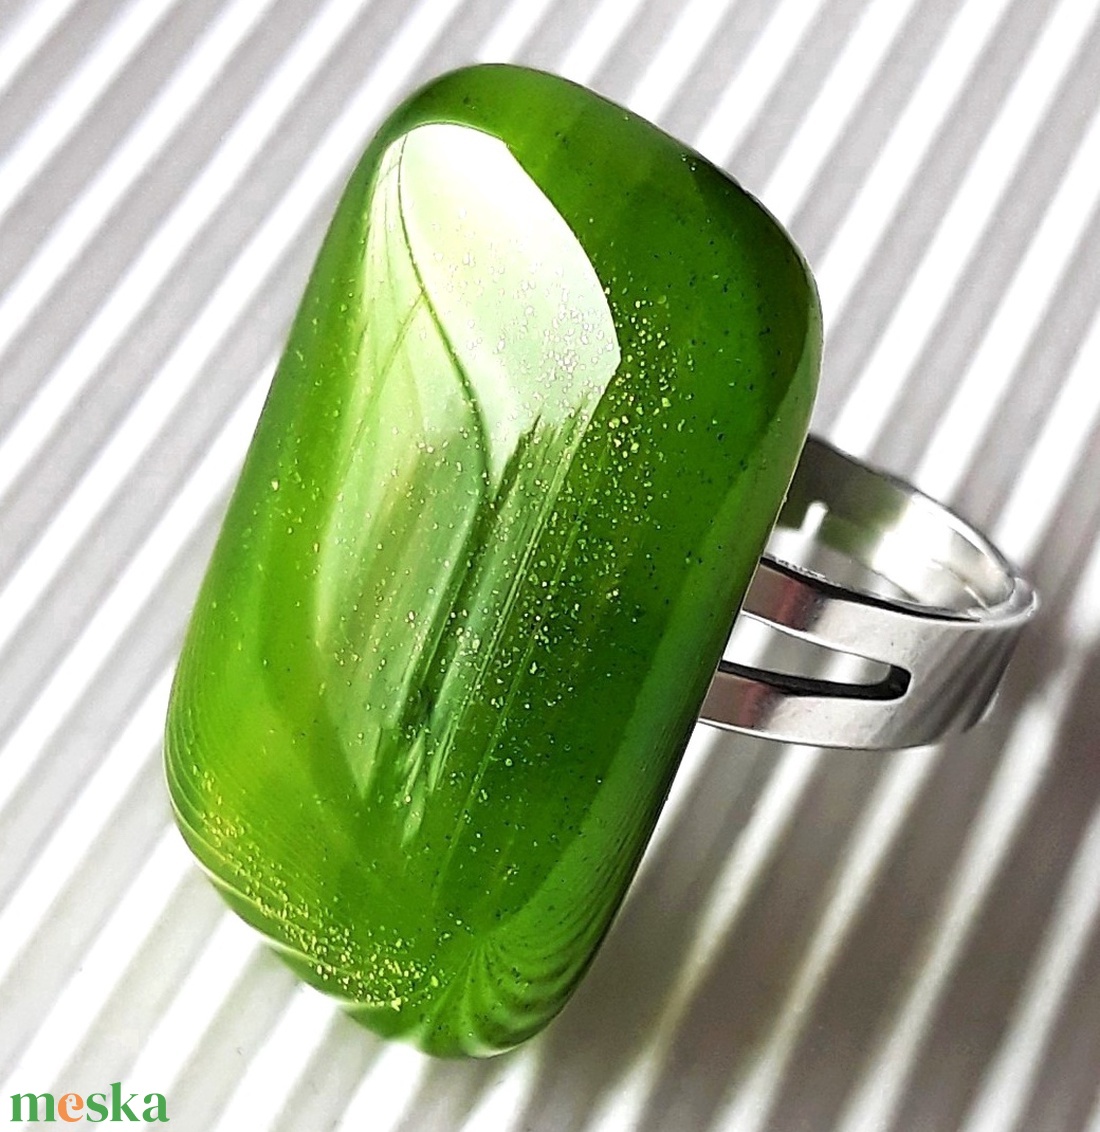 Lorien erdeje elegáns üveg gyűrű nemesacél alapon, üvegékszer - ékszer - gyűrű - statement gyűrű - Meska.hu